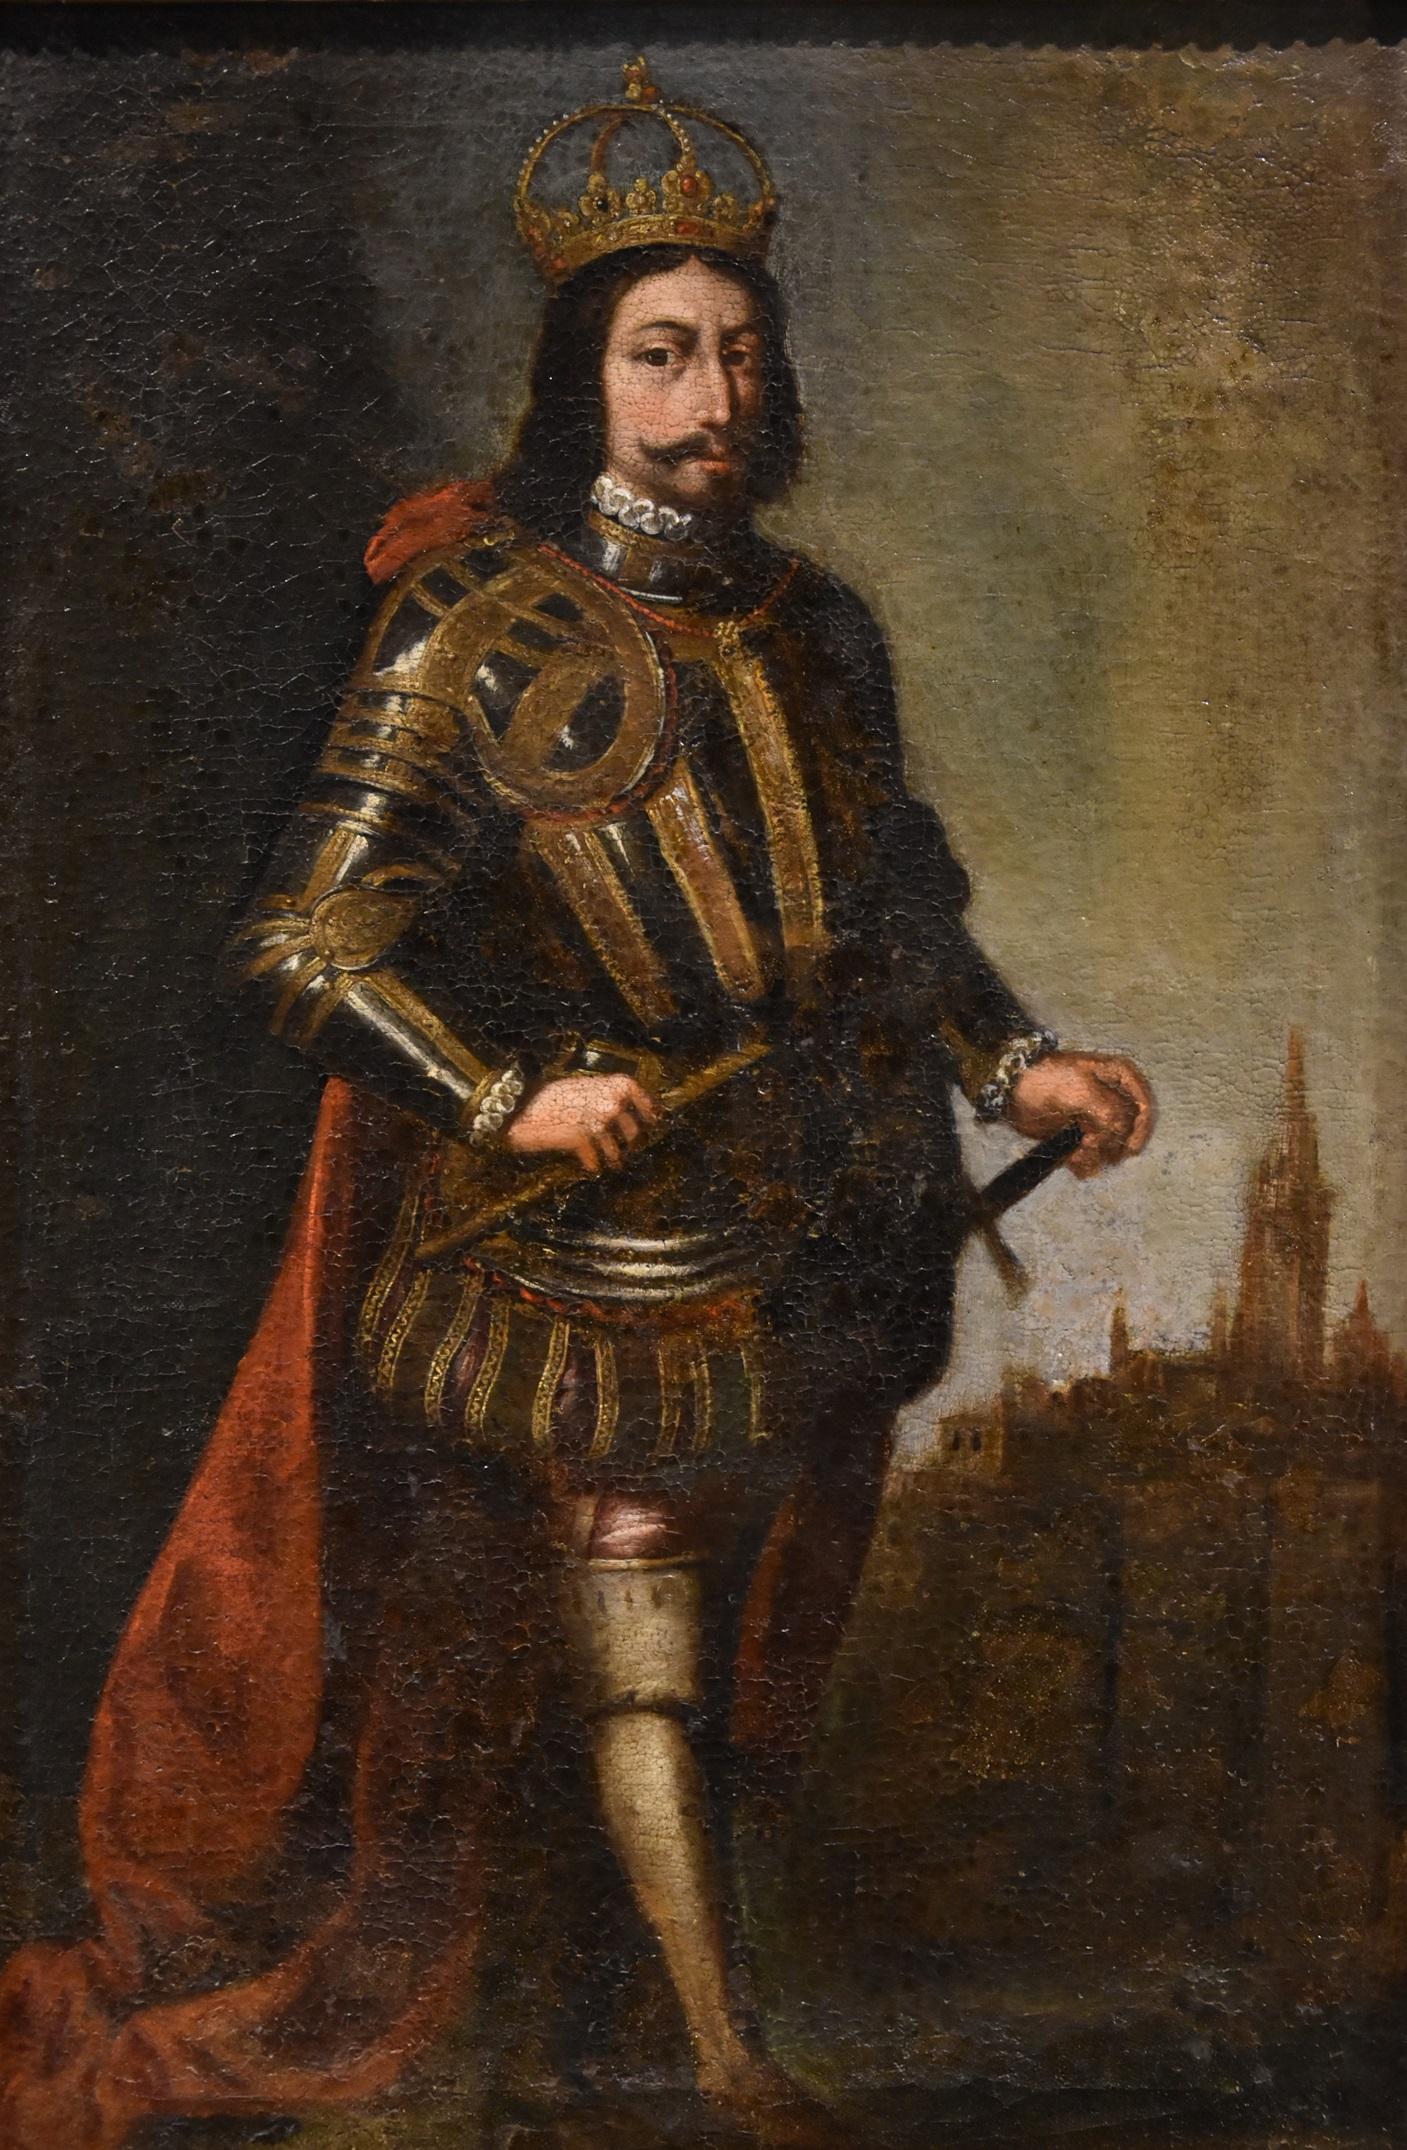 Francisco de Zurbaran (Fuente de Cantos 1598 - Madrid 1664) cercle
Portrait en pied d'un roi

Deuxième moitié du XVIIe siècle

Huile sur toile
78 x 52 cm. - dans le cadre 89 x 67 cm.


La représentation des monarques a eu une forte fonction de